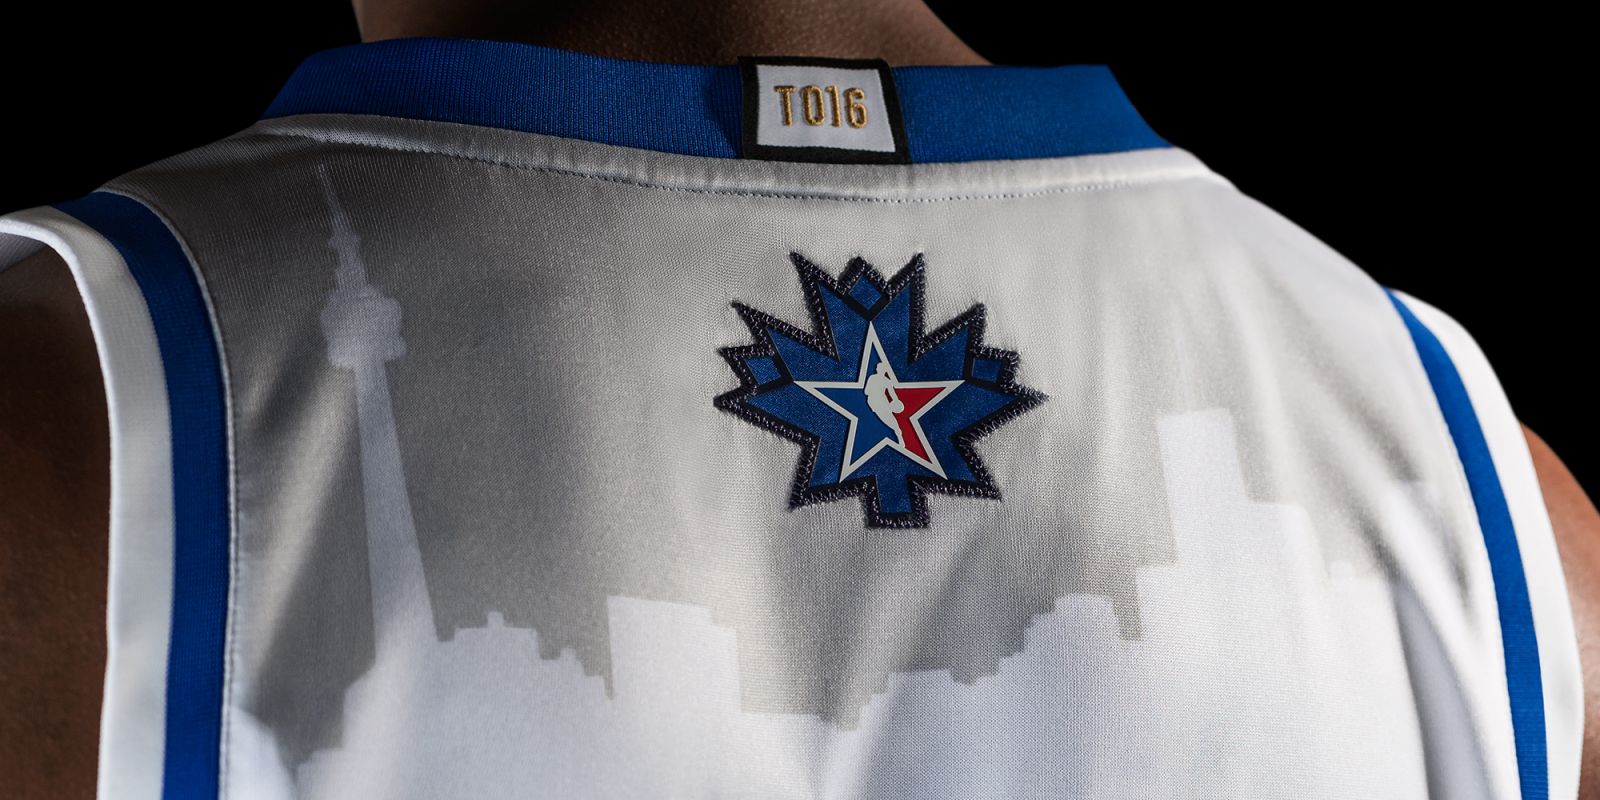 NBA 2016 All Star Uniforms Jersey